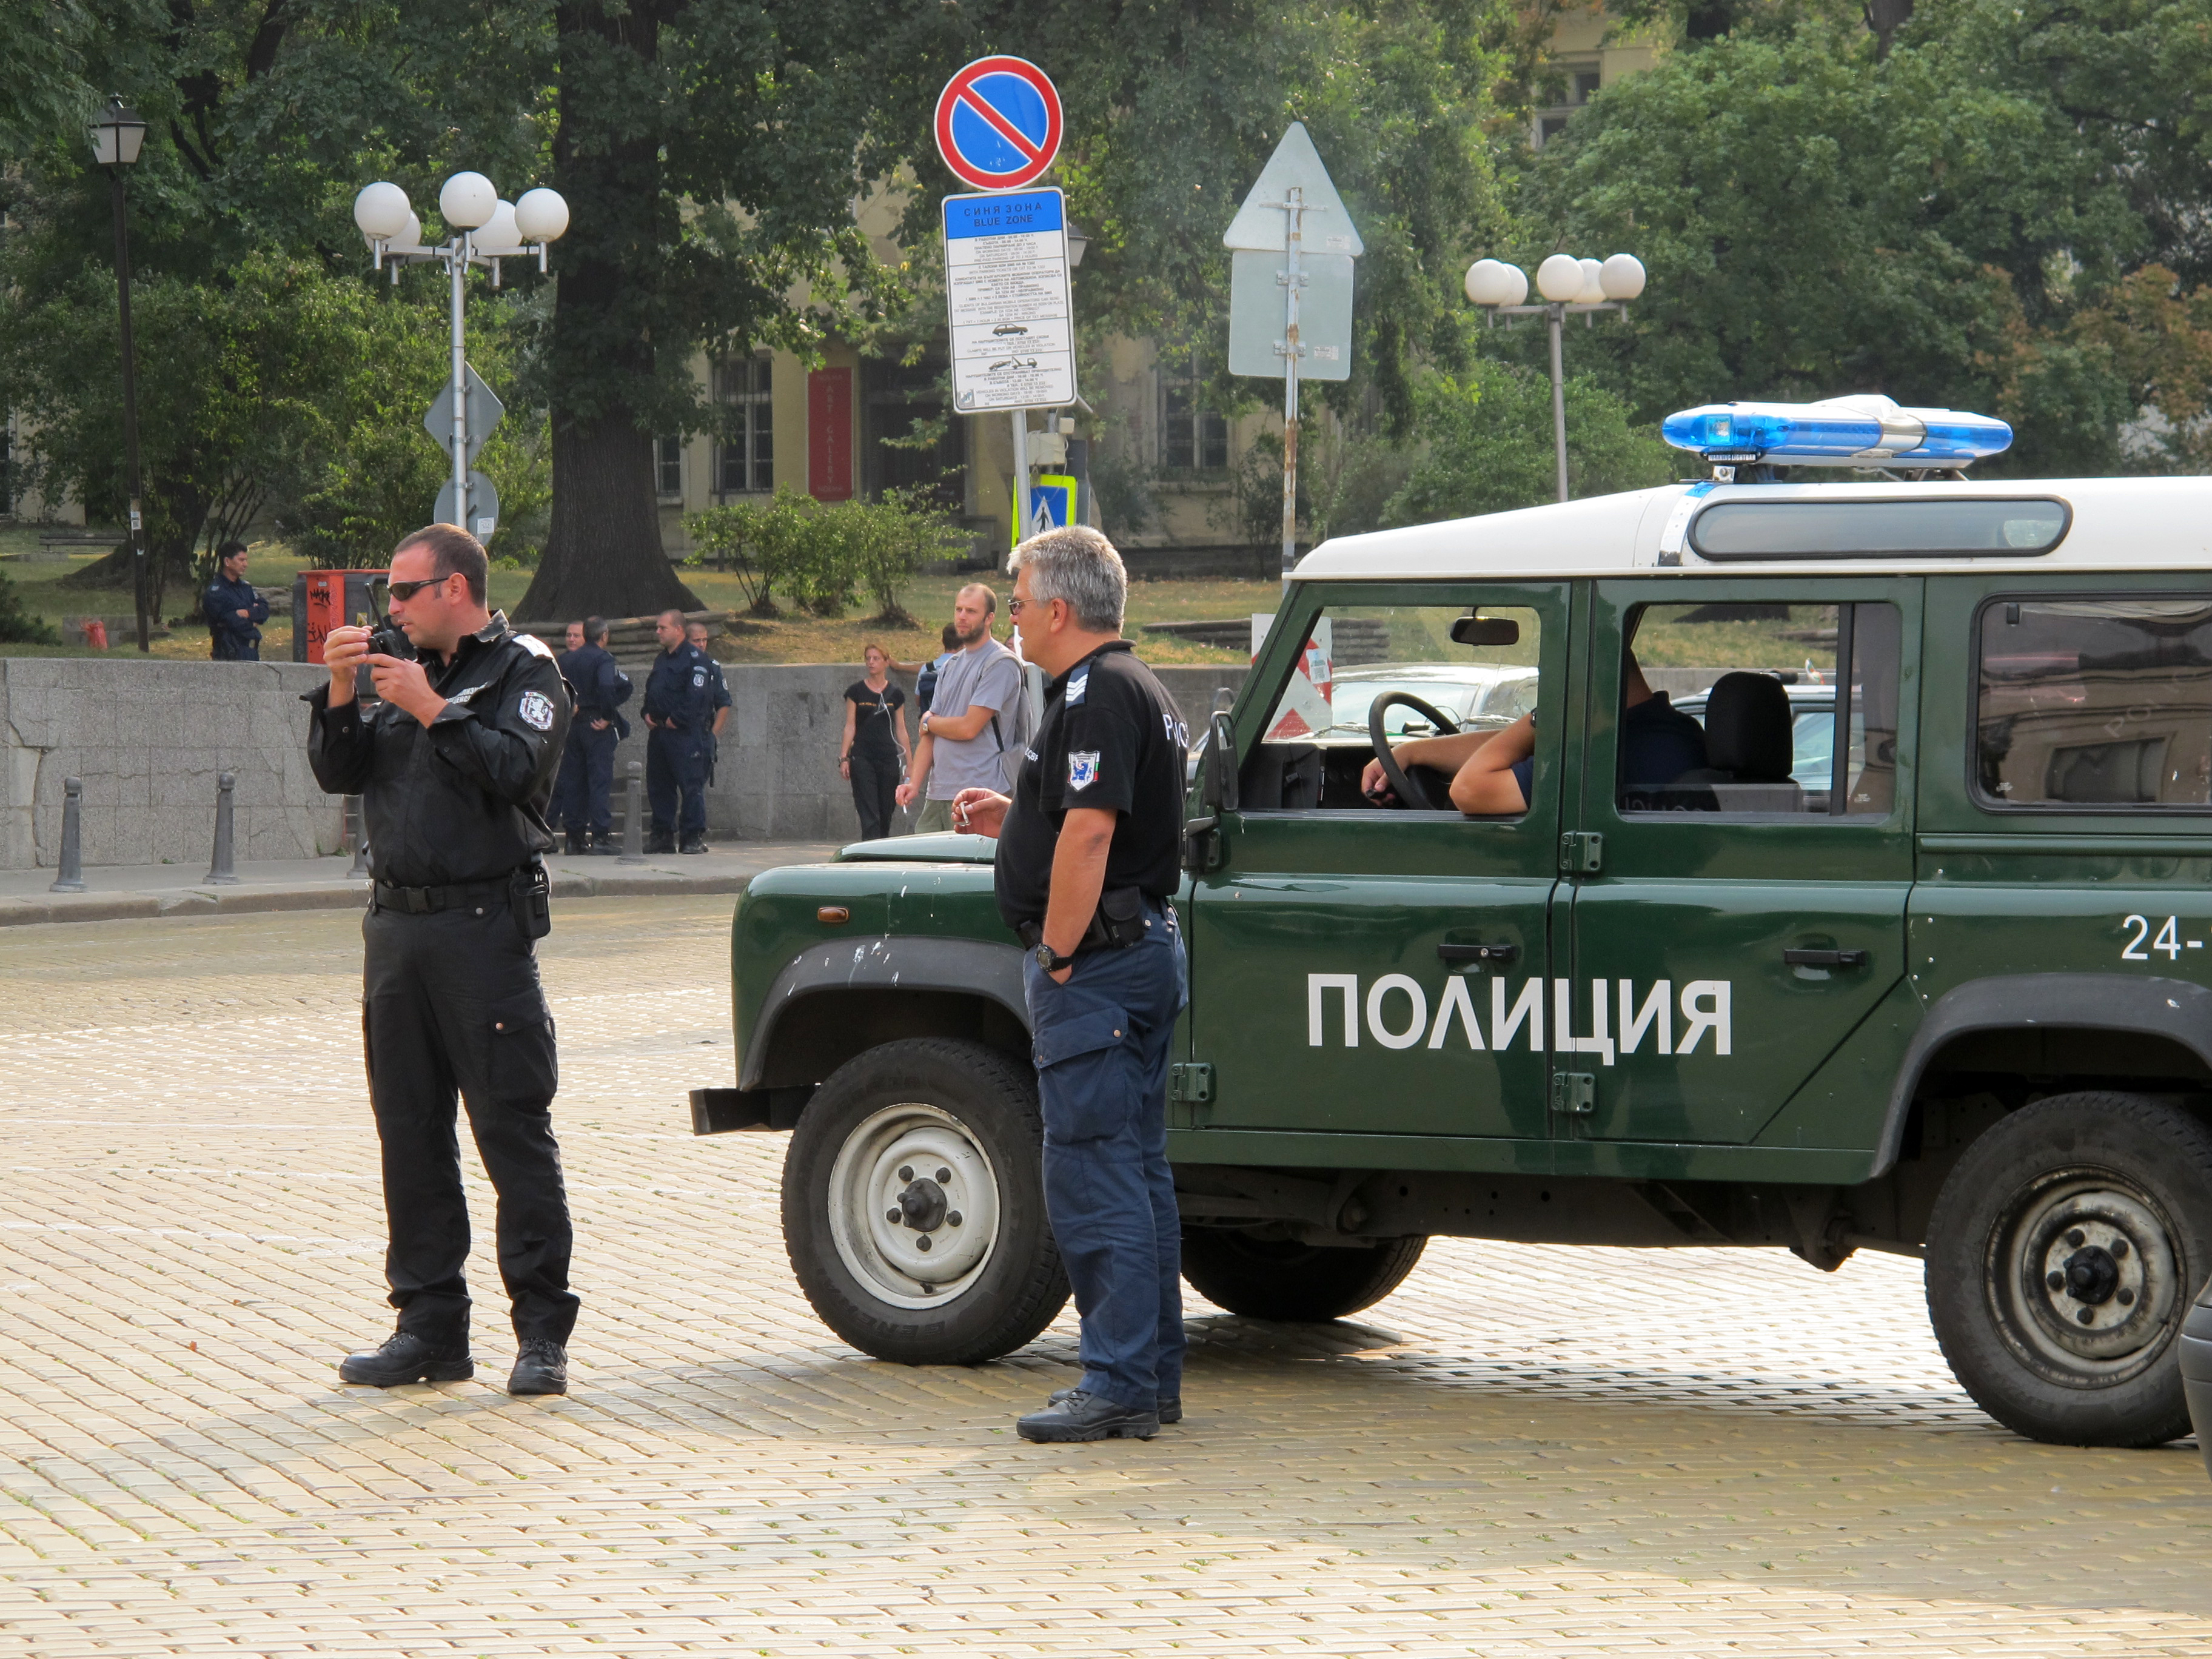 Българските полицаи са недоволни от заплащането си